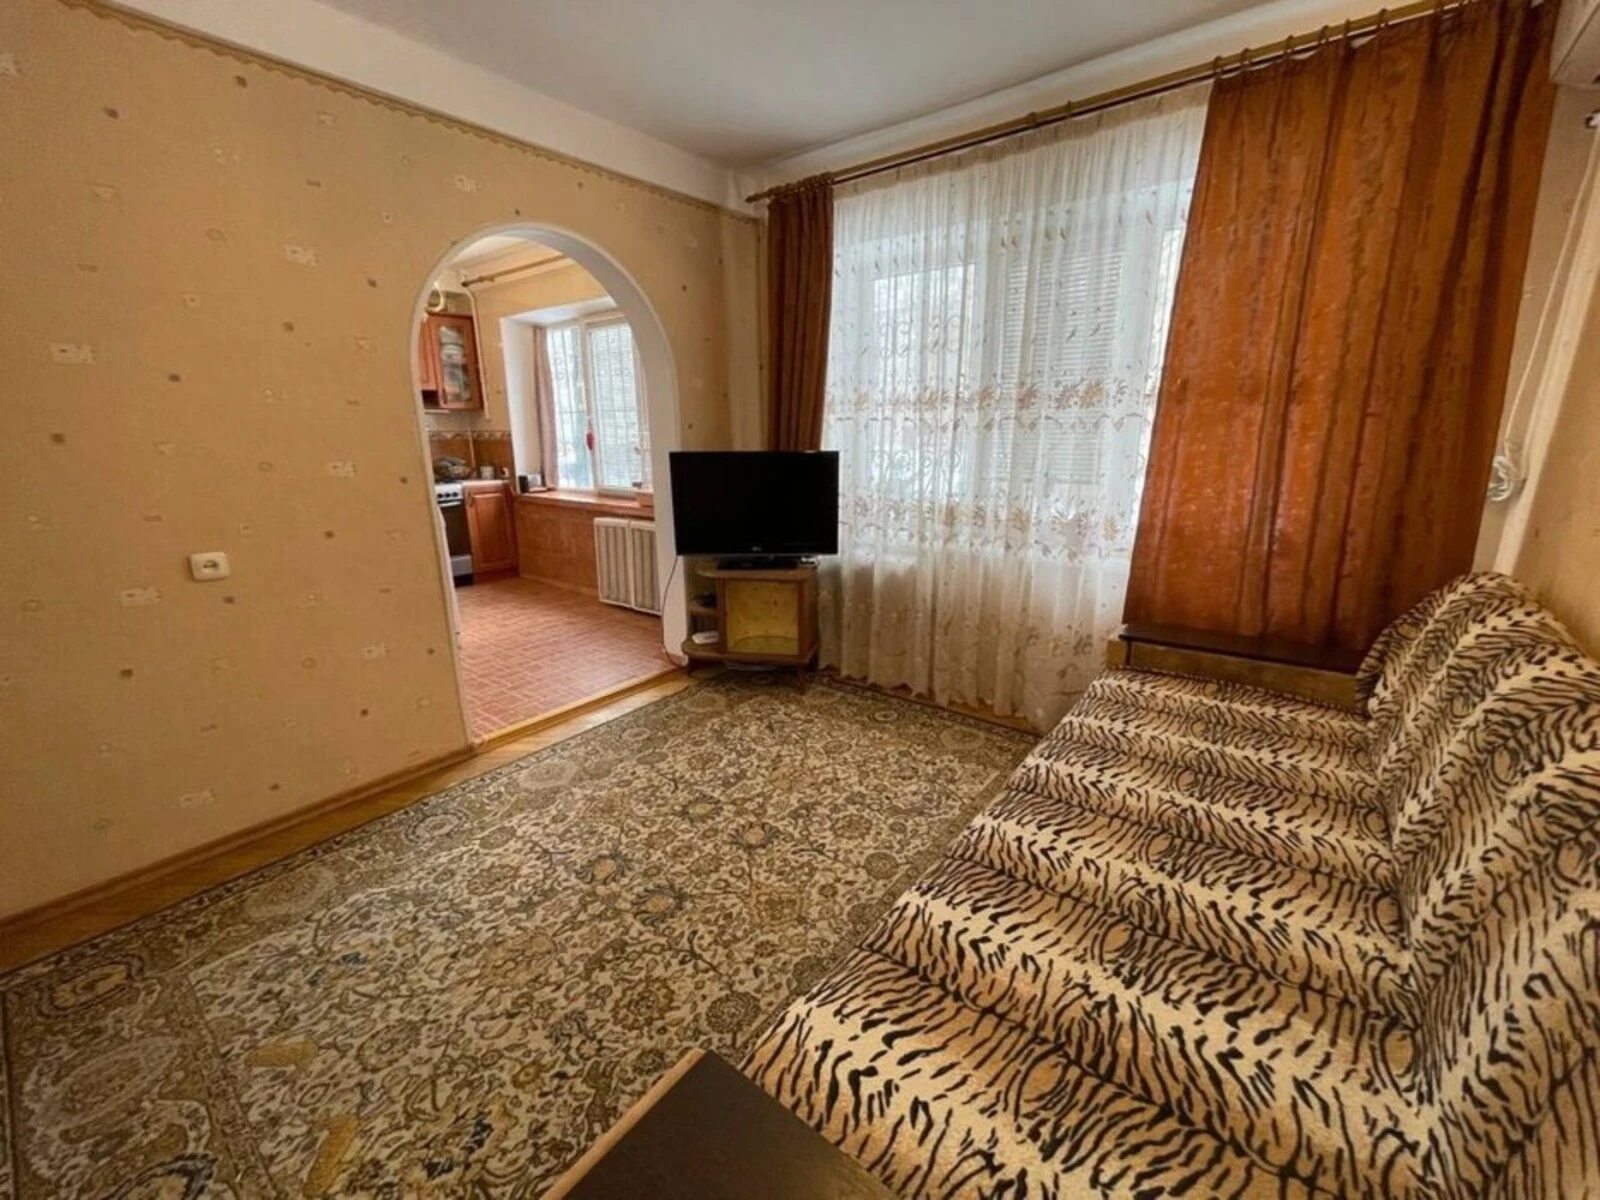 Продам 2-х кімнатну квартиру, Шевченківський р-н, вул.Турчина 11а